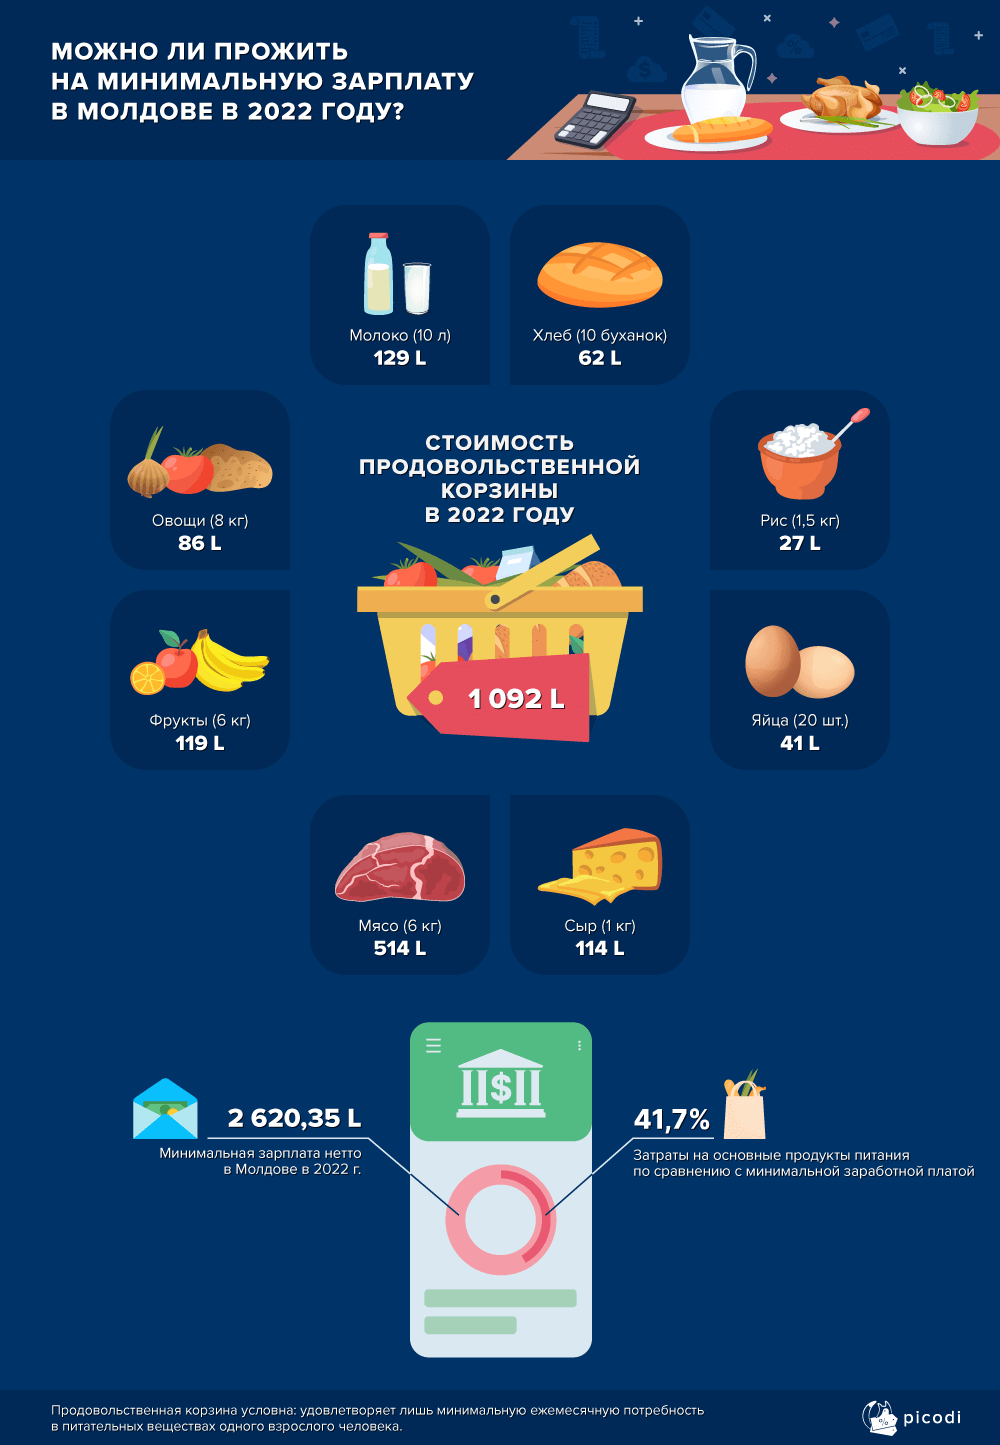 Сколько денег из «минималки» уходит на питание. Молдова занимает 53 место из 64 стран по этому показателю